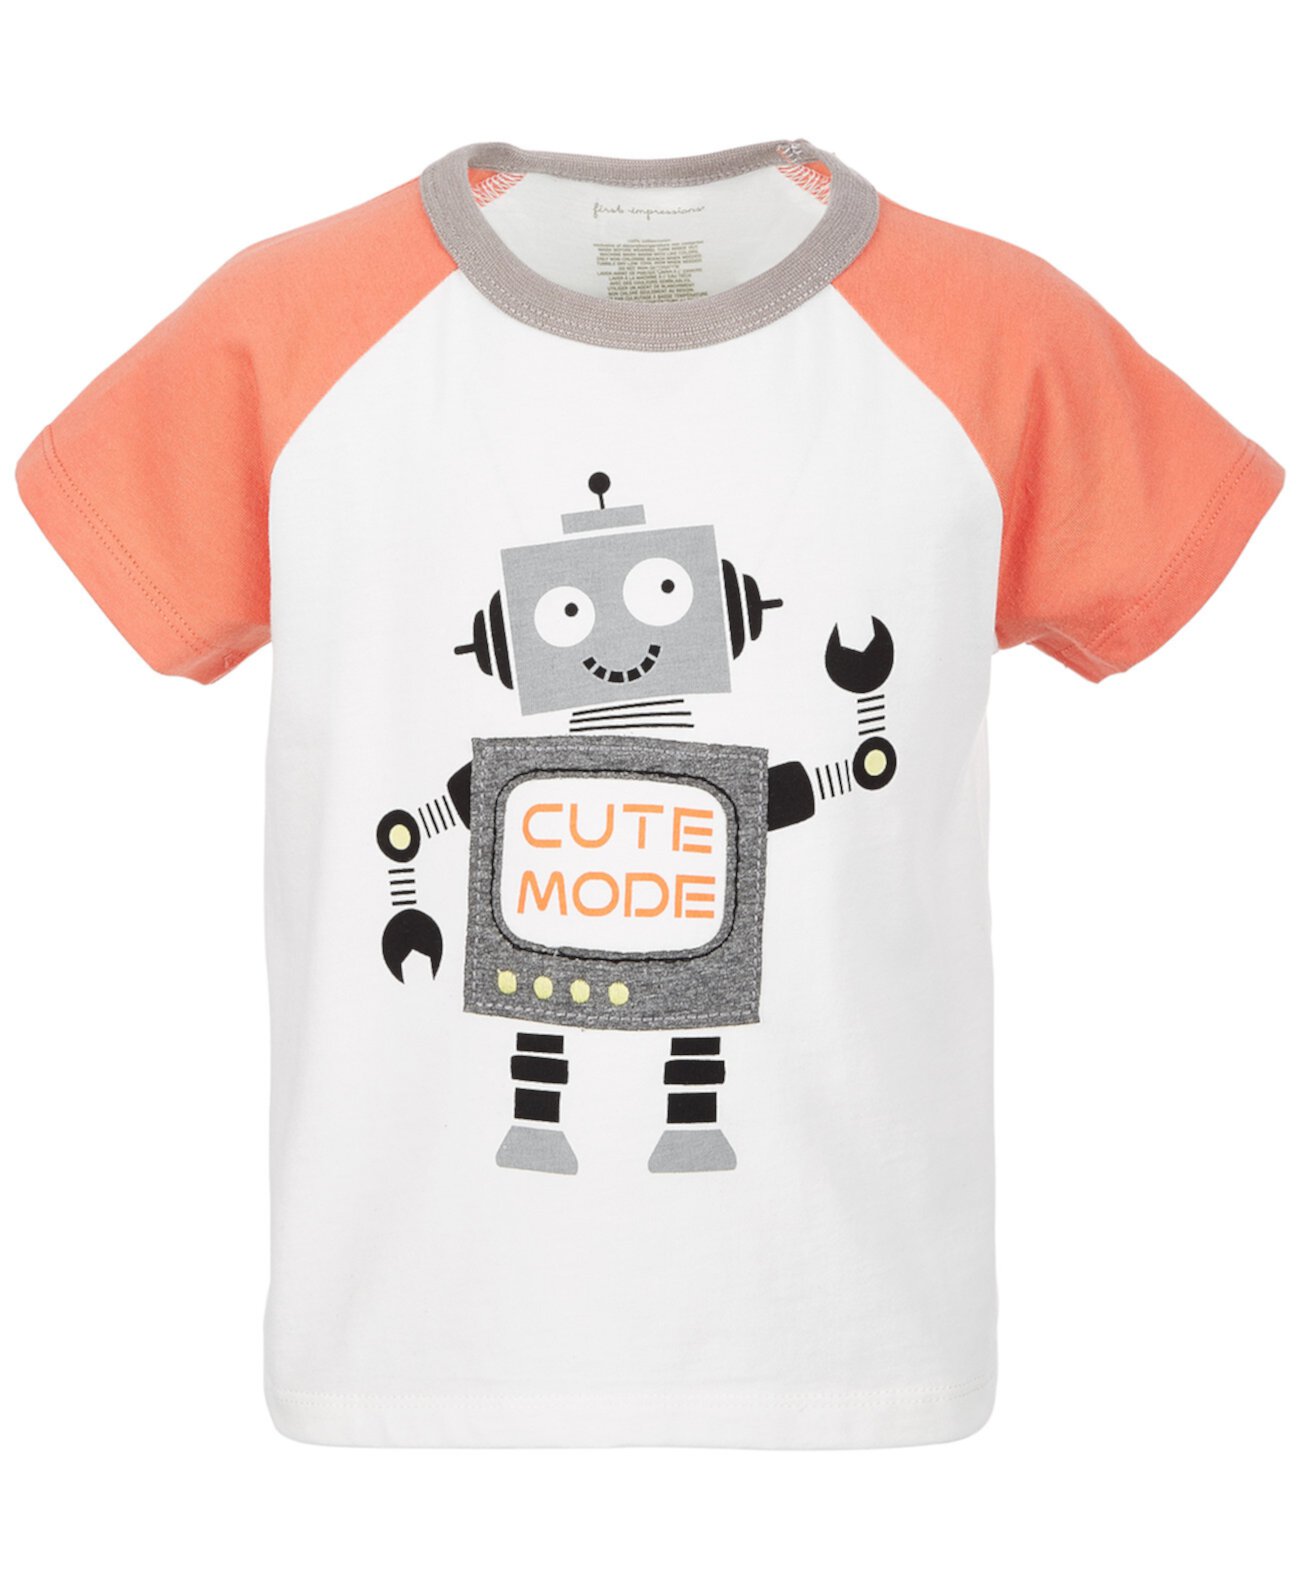 Хлопковая футболка с милым рисунком для малышей и мальчиков, созданная для Macy's First Impressions